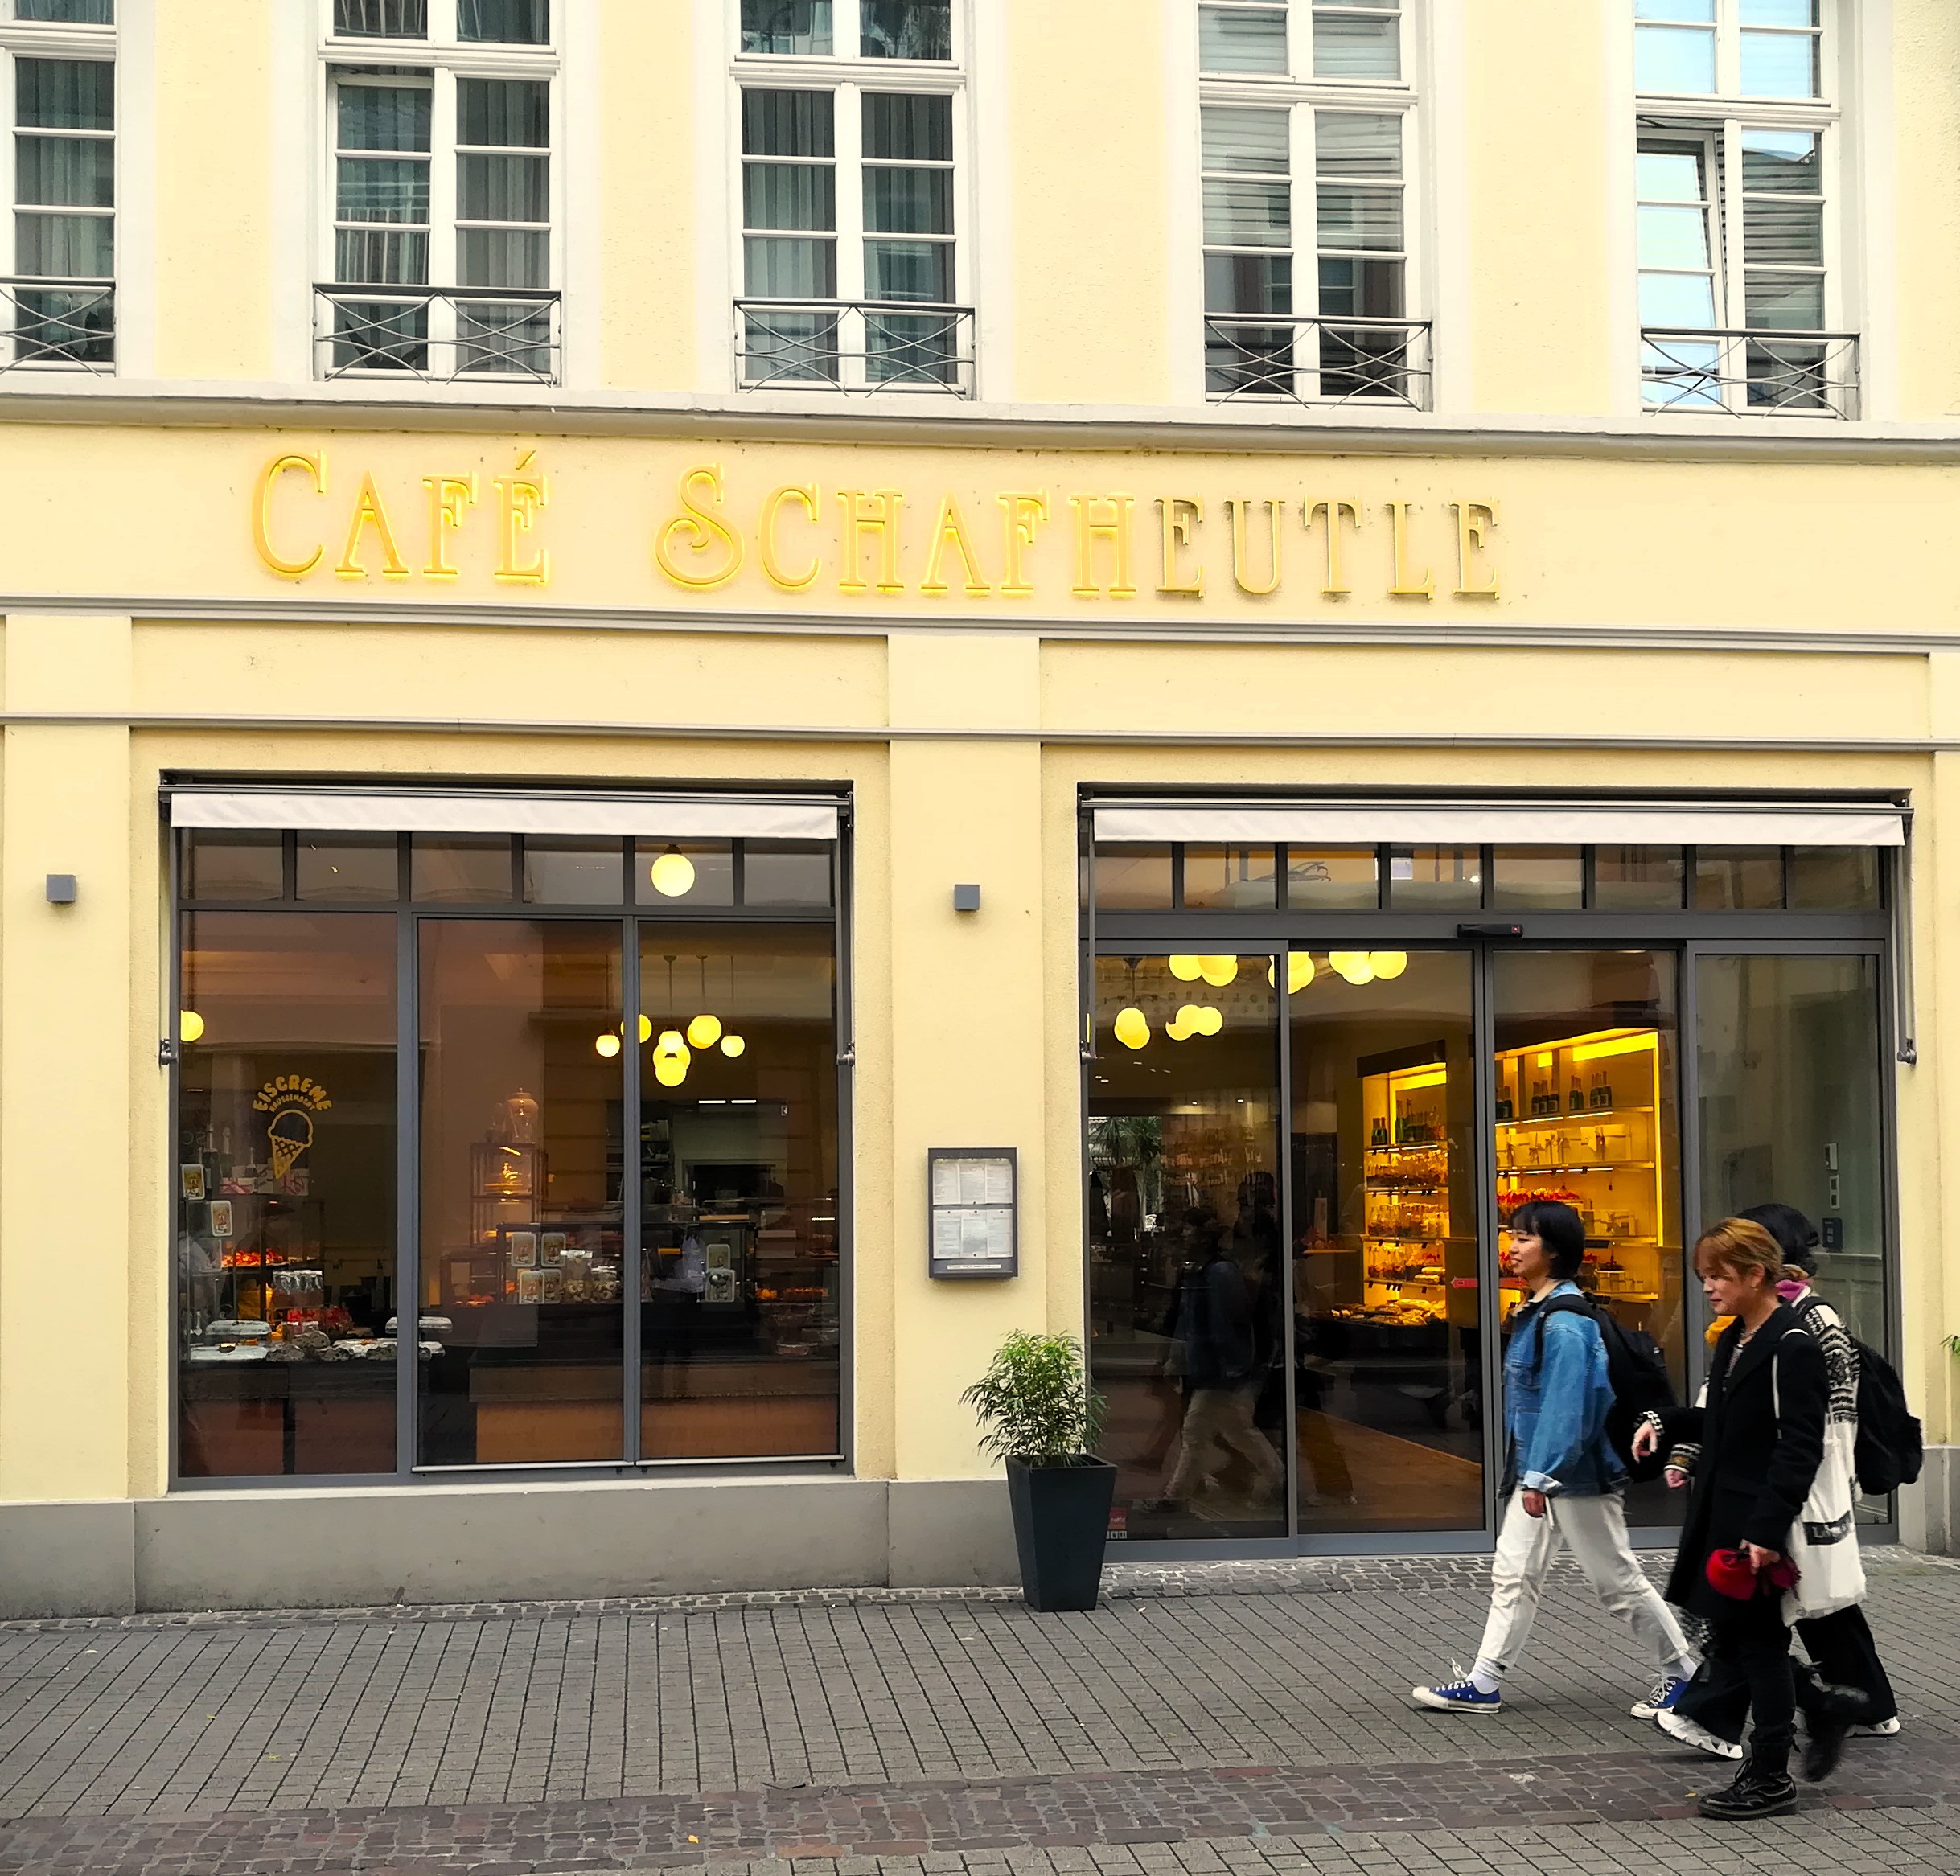 Foto der Ladenfront vom Café Schafheutle in der Heidelberger Innenstadt